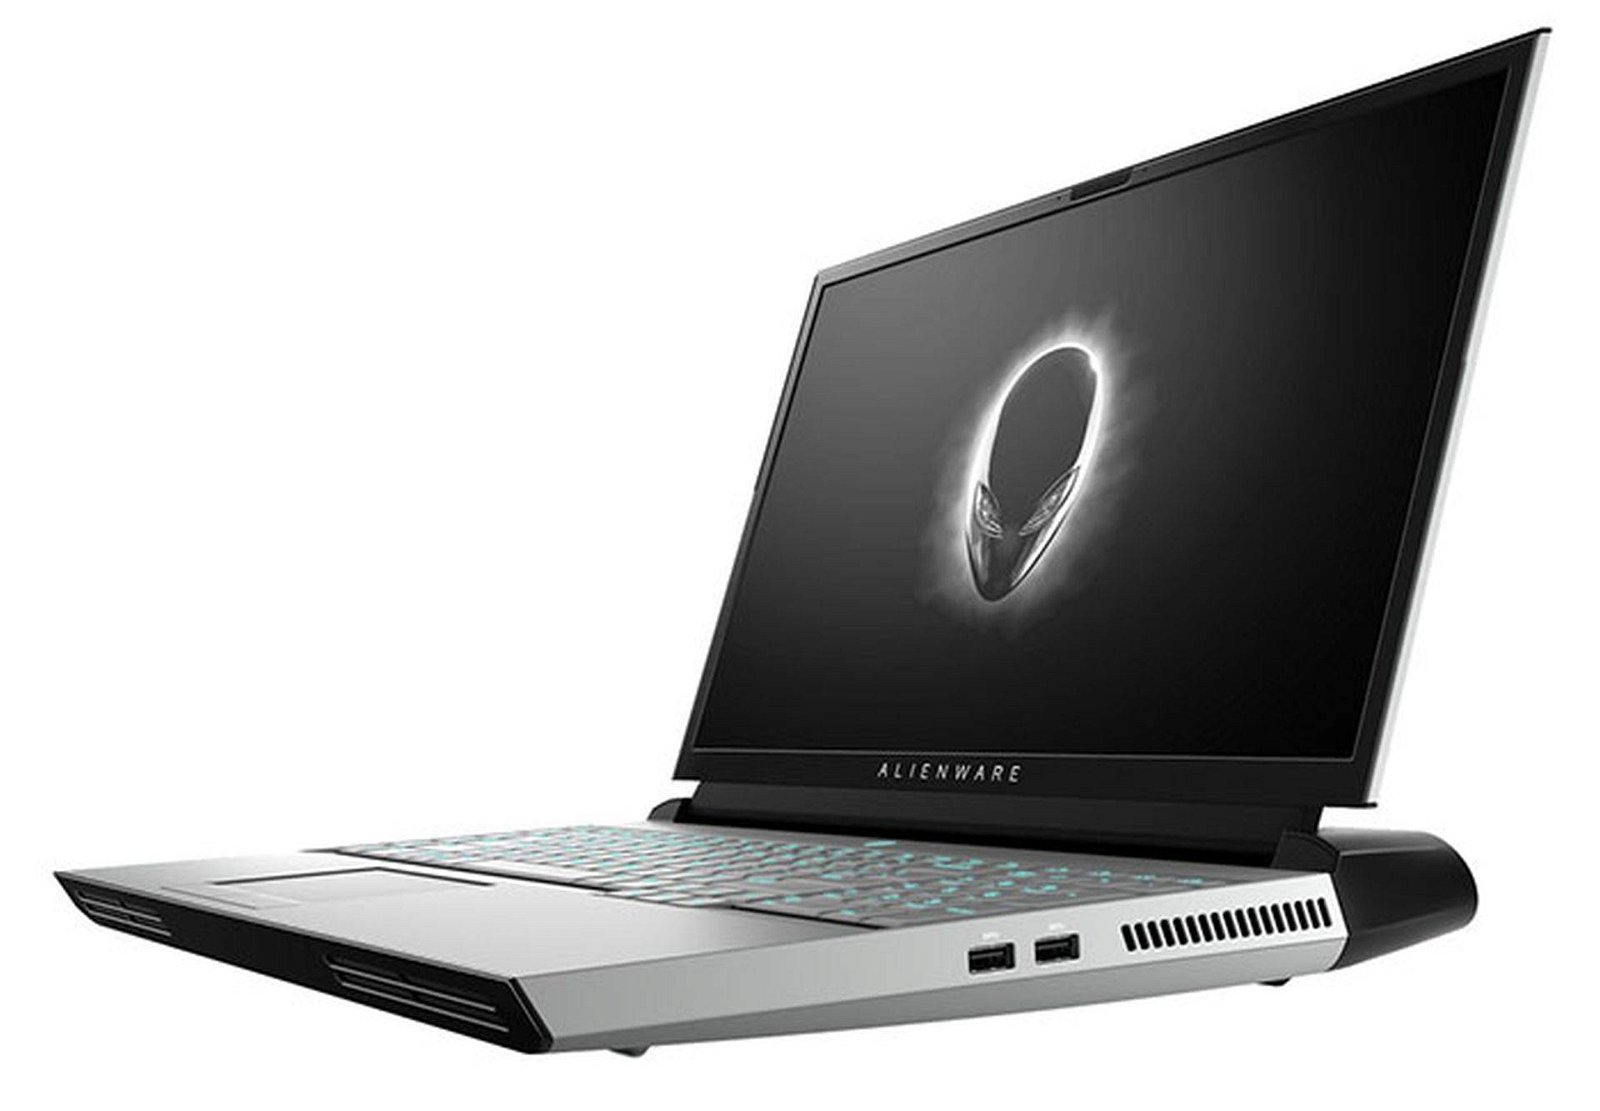 Immagine di Area-51m, il "portatile" di Alienware che permette di sostituire CPU e GPU